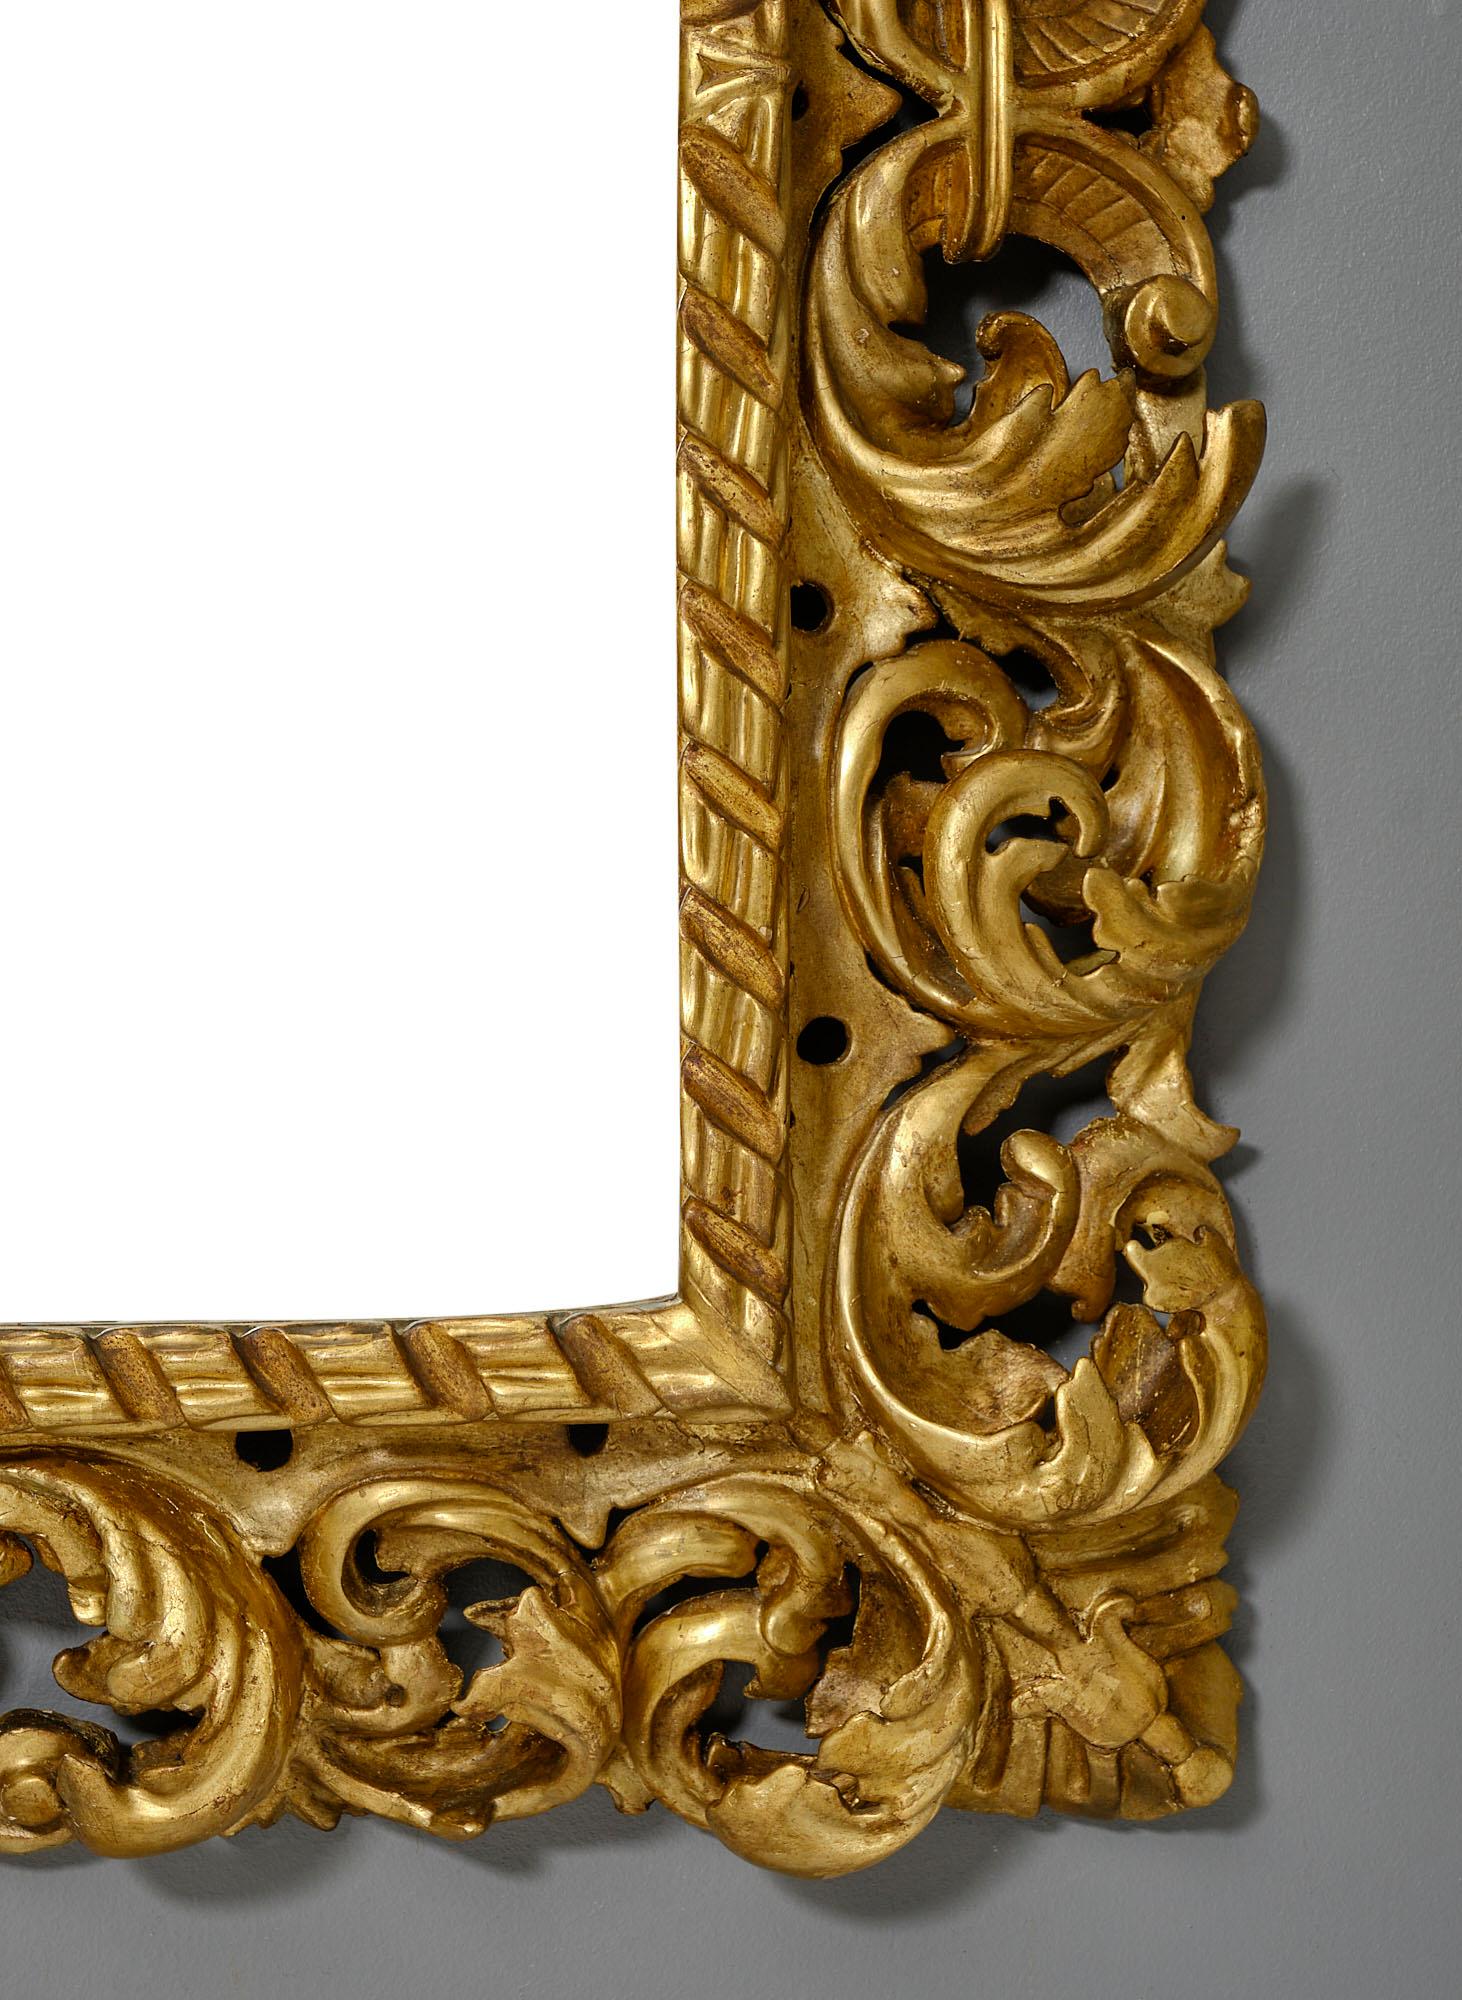 Großer Spiegel aus Italien, 19. Jahrhundert. Dieses Stück stammt ursprünglich aus einem toskanischen Palazzo. Wir lieben das reiche Dekor aus handgeschnitzten Akanthusblättern und Schriftrollen in dem stuckierten und handgeschnitzten Rahmen. Er ist